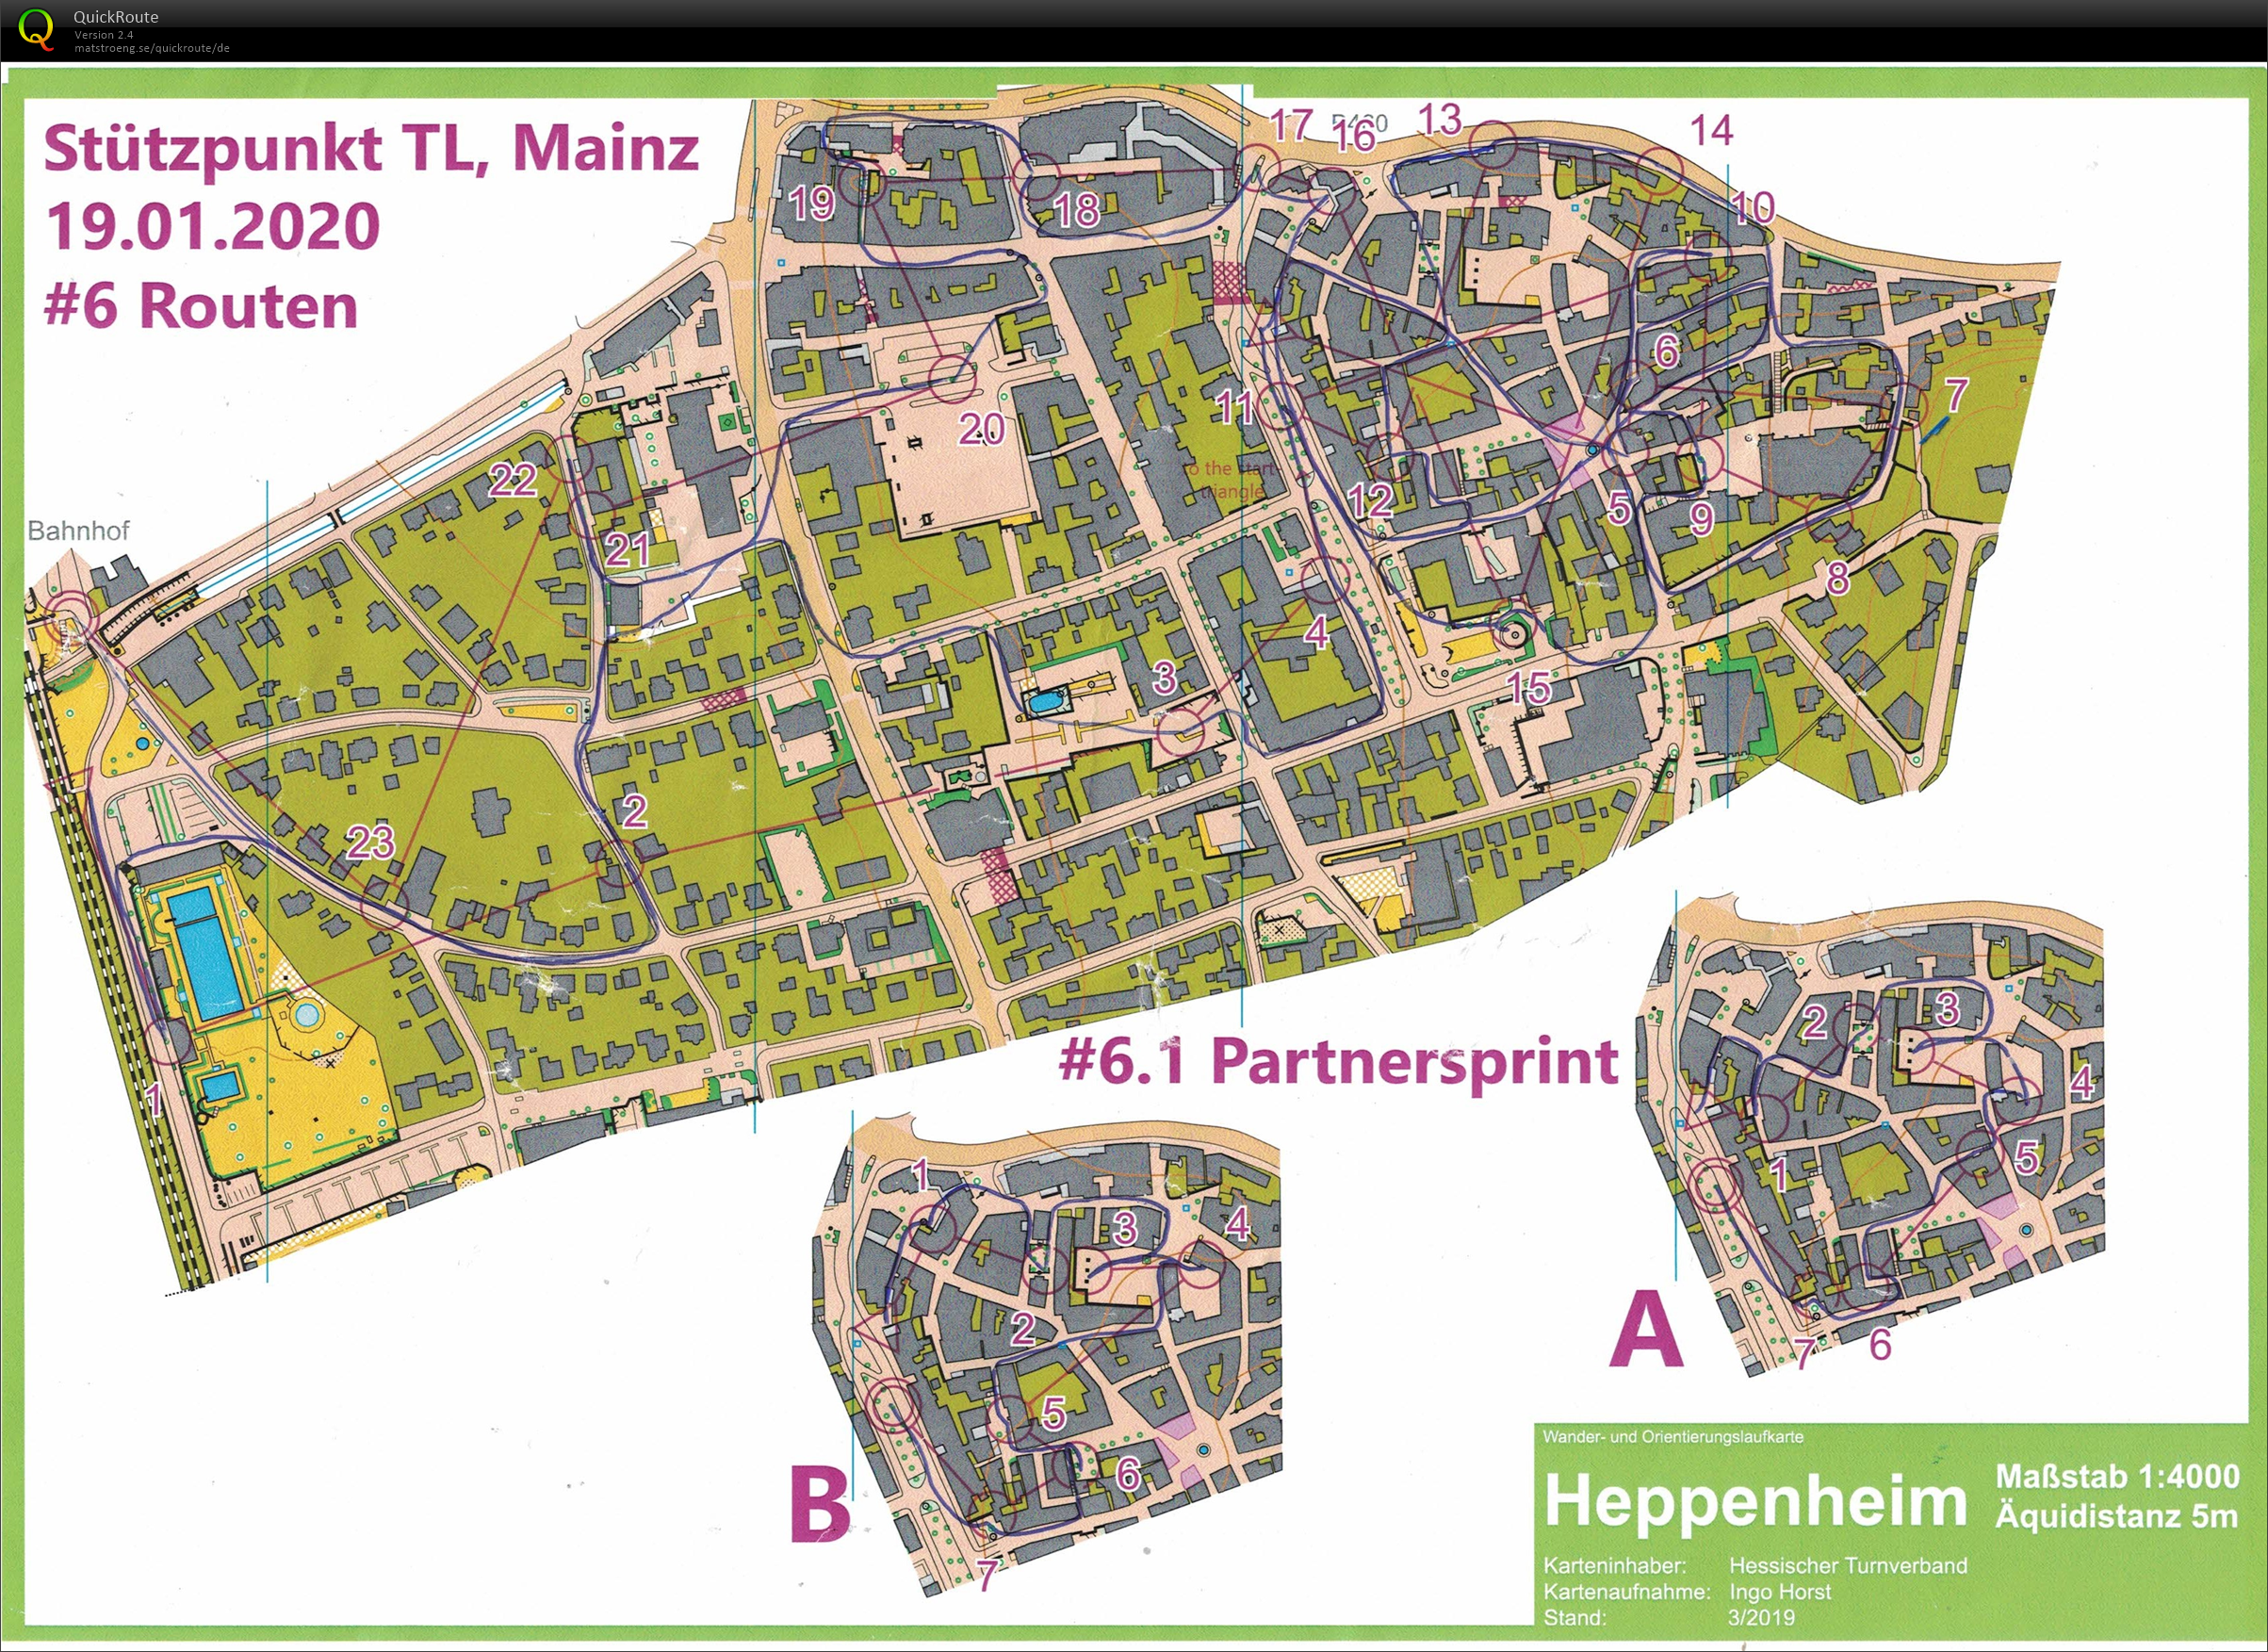 Stützpunkt Mainz: Routen & Paarsprint (19.01.2020)